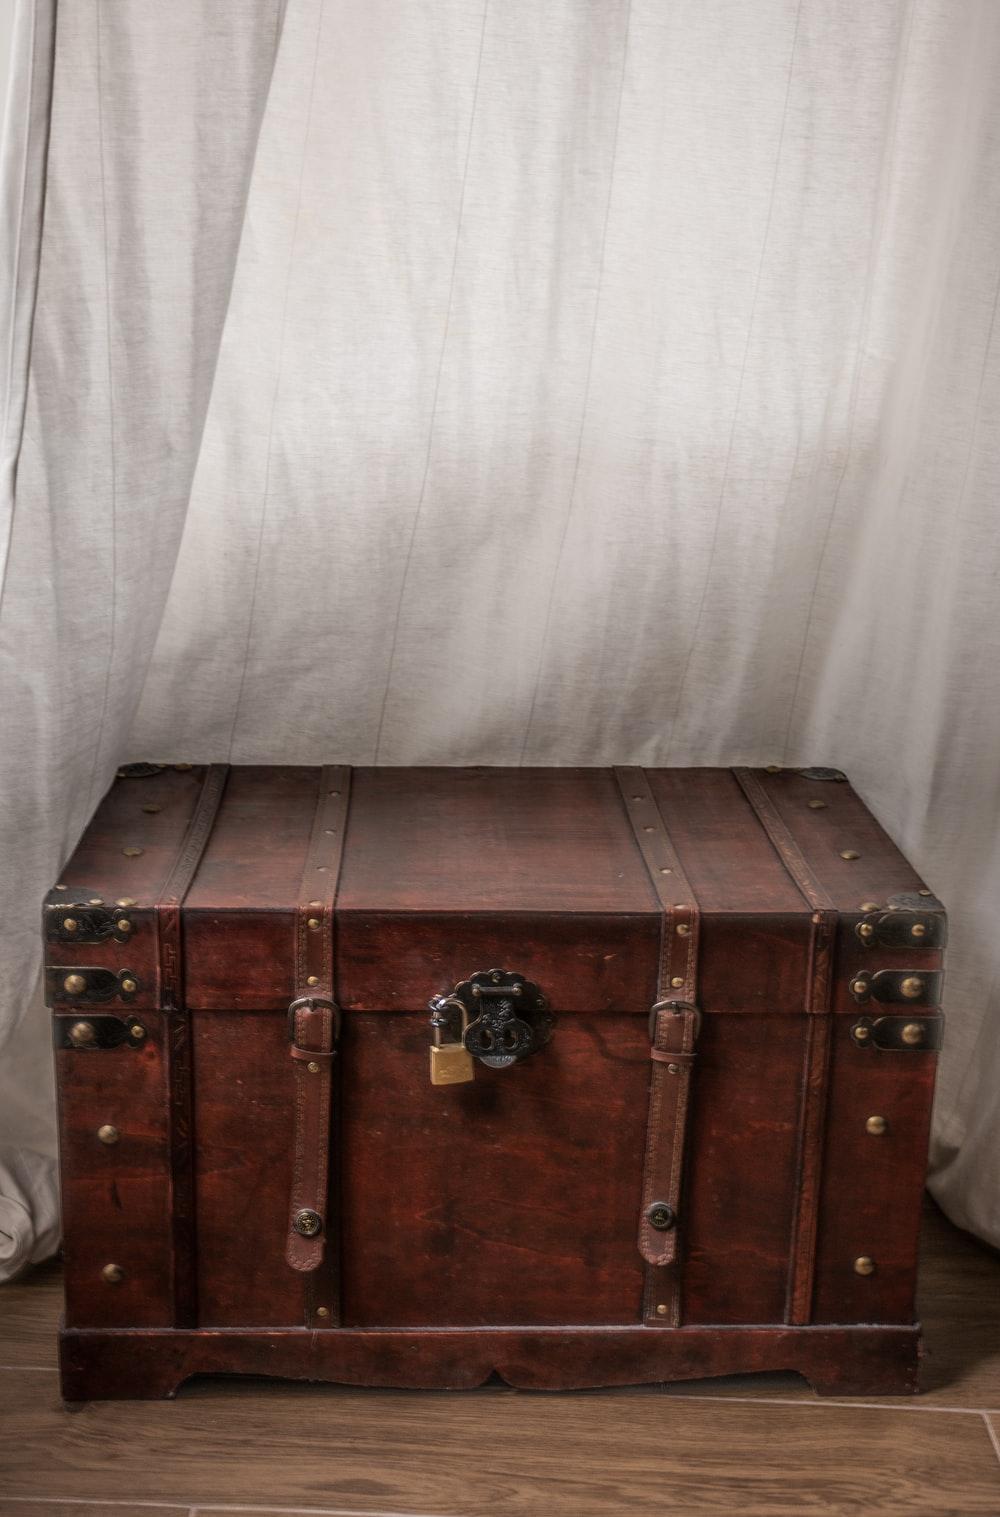 عکس صندوق خاطرات قدیمی با سبک سنتی و طرح چوبی باستانی